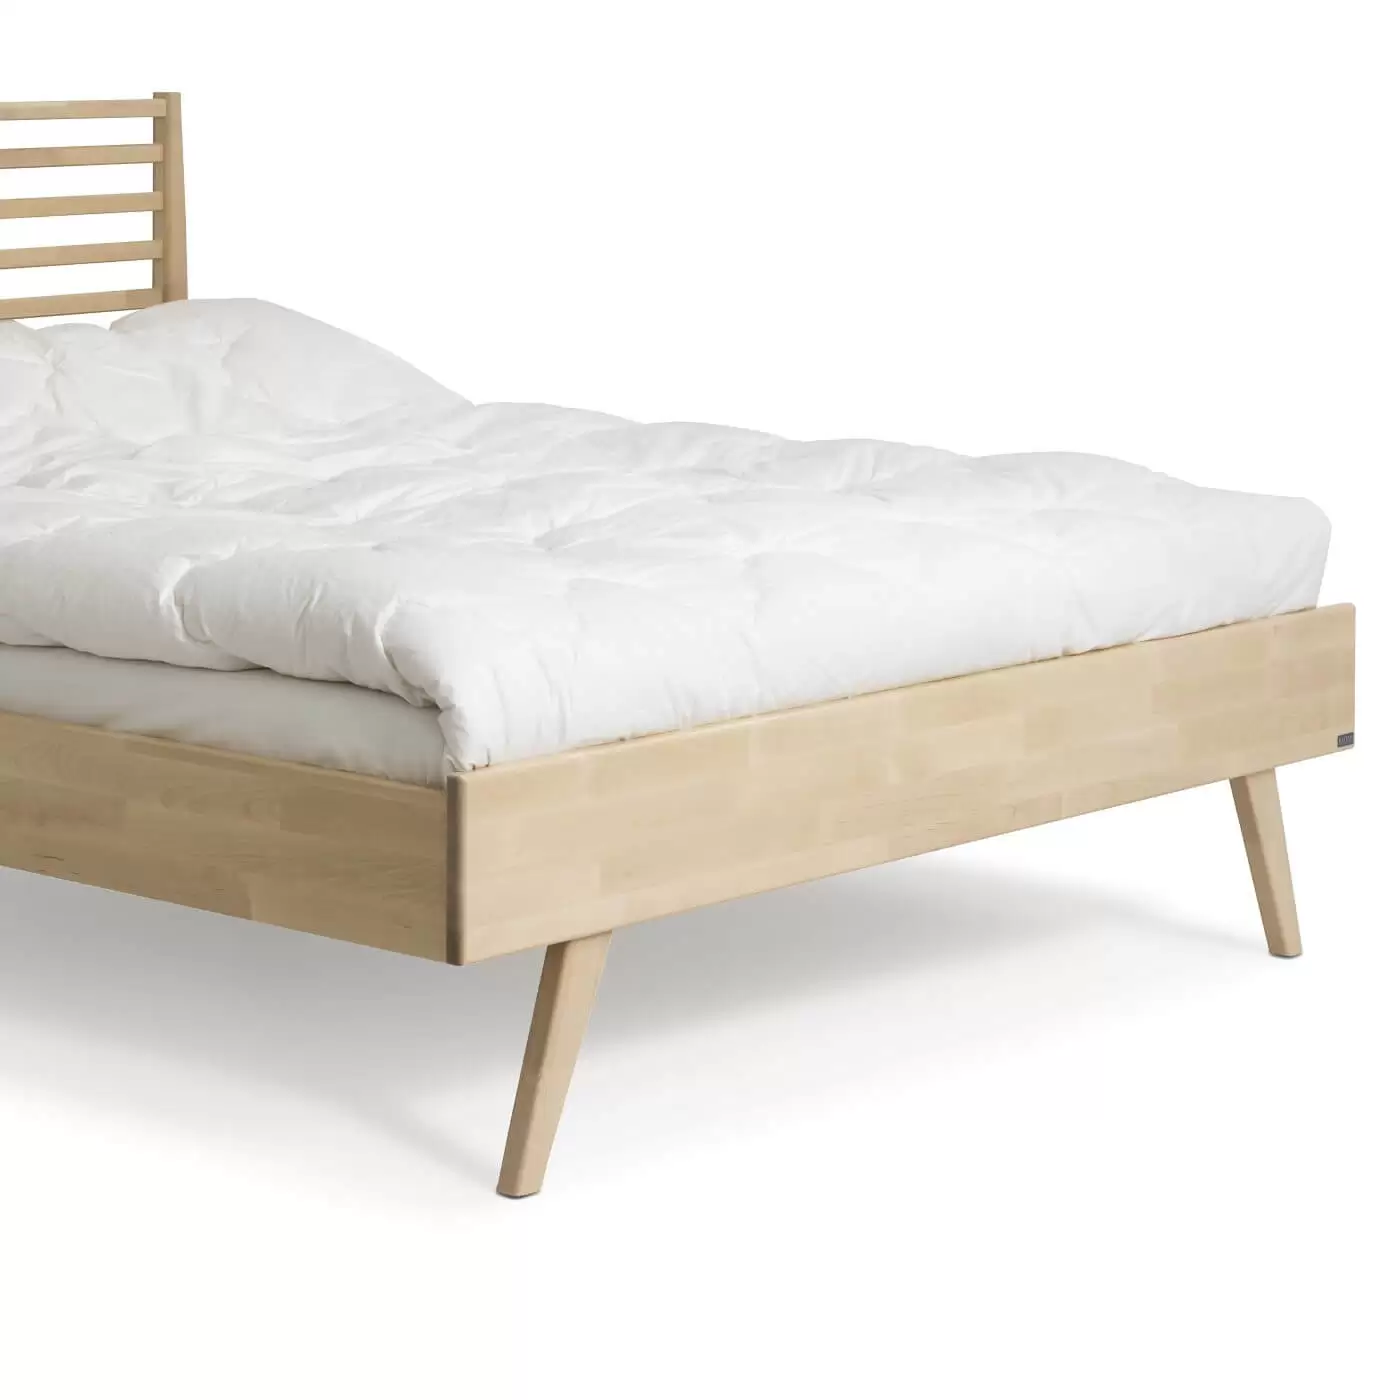 Łóżko drewniane 160x200 NOTTE. Fragment z widokiem na wysokie skośne nóżki z drewna łóżka do sypialni 160x200. Skandynawski design